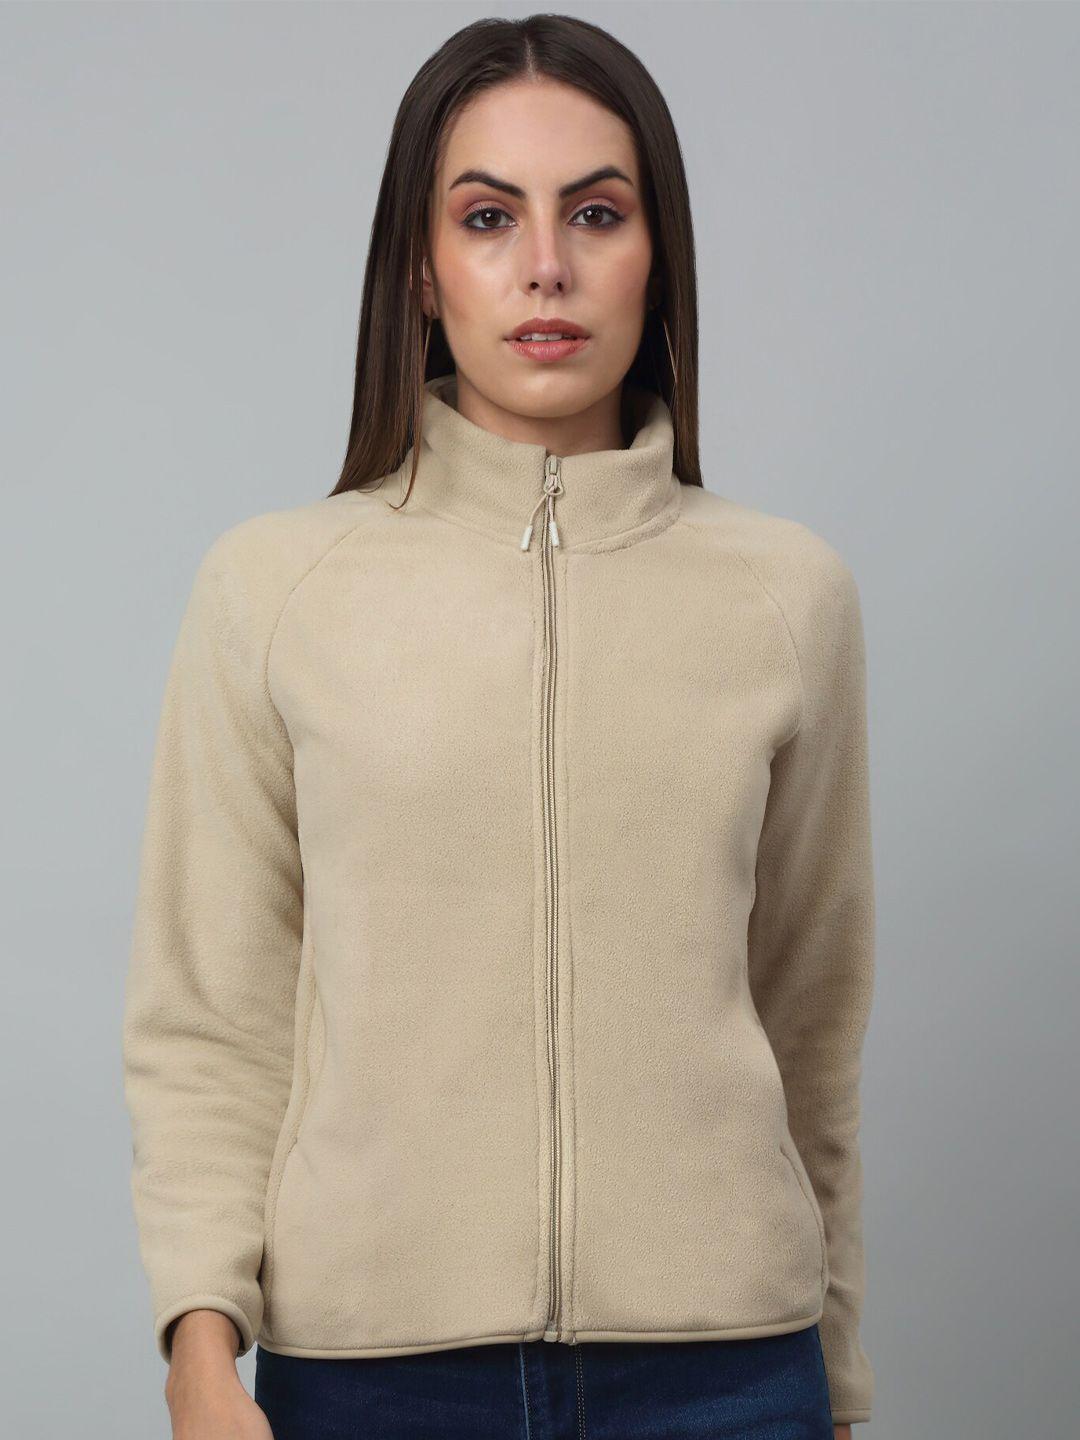 cantabil mock collar fleece front open sweatshirt